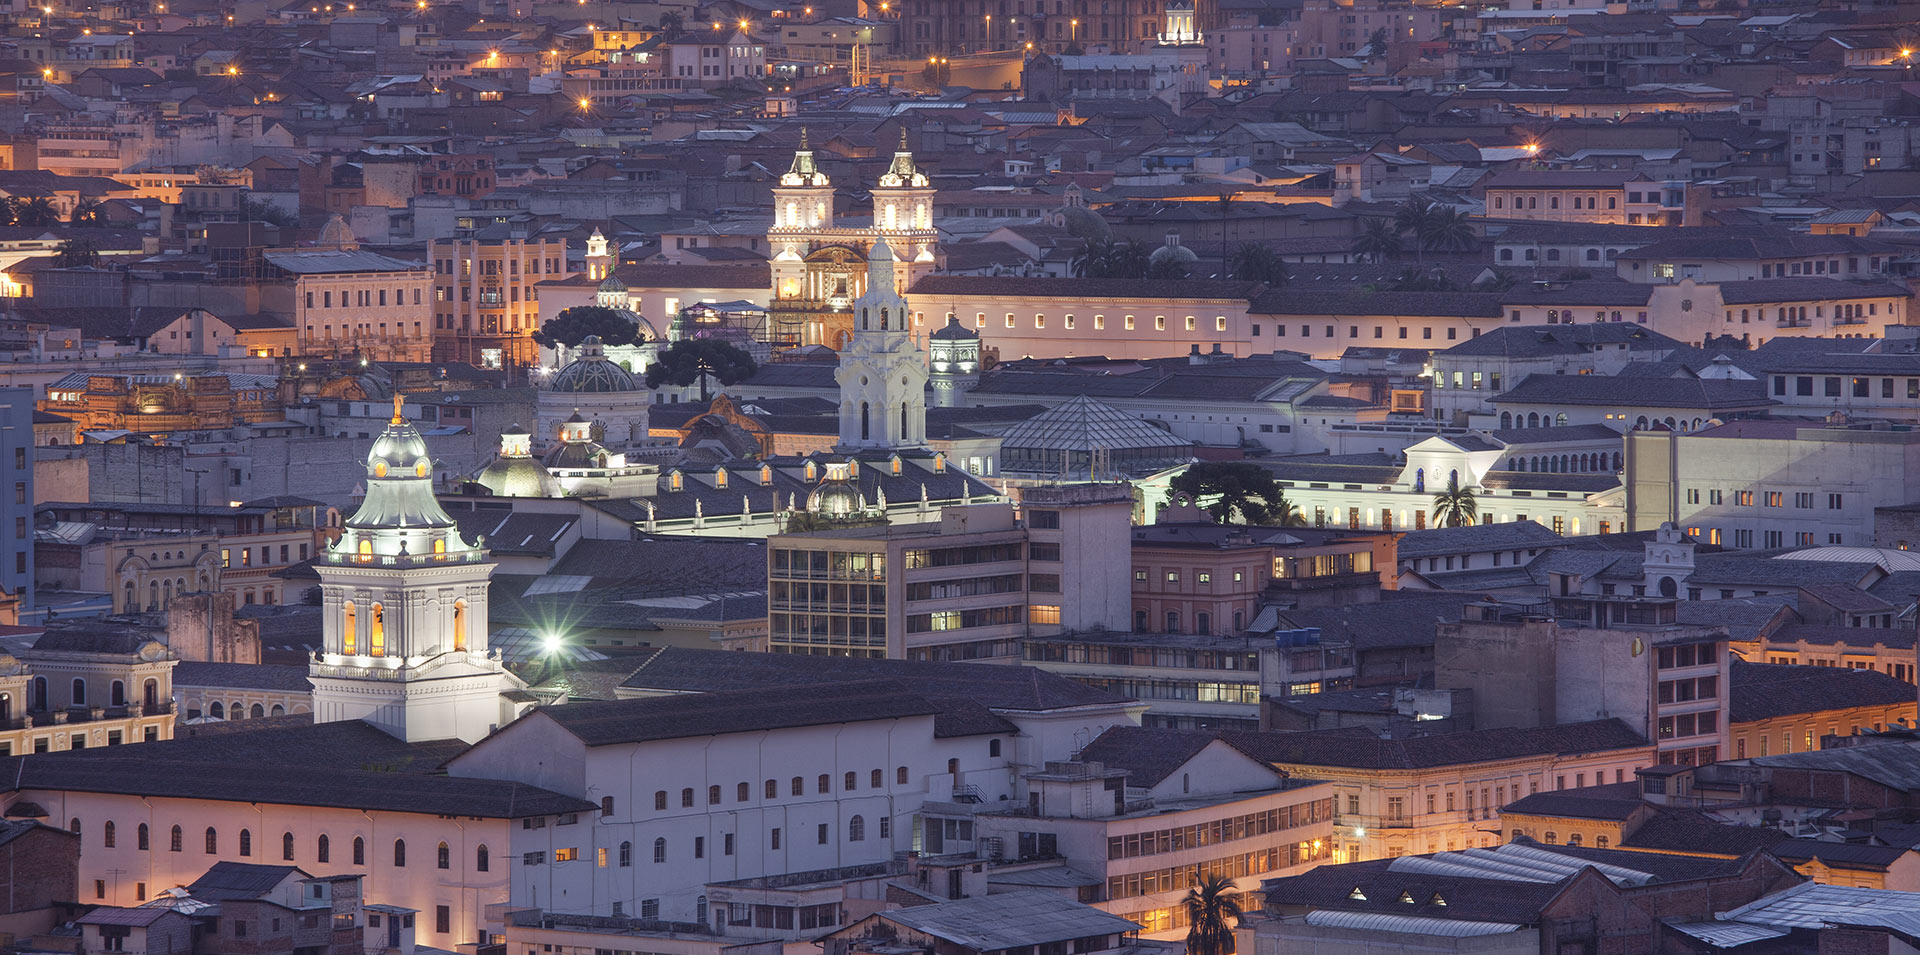 Centro histórico de Quito en la noche